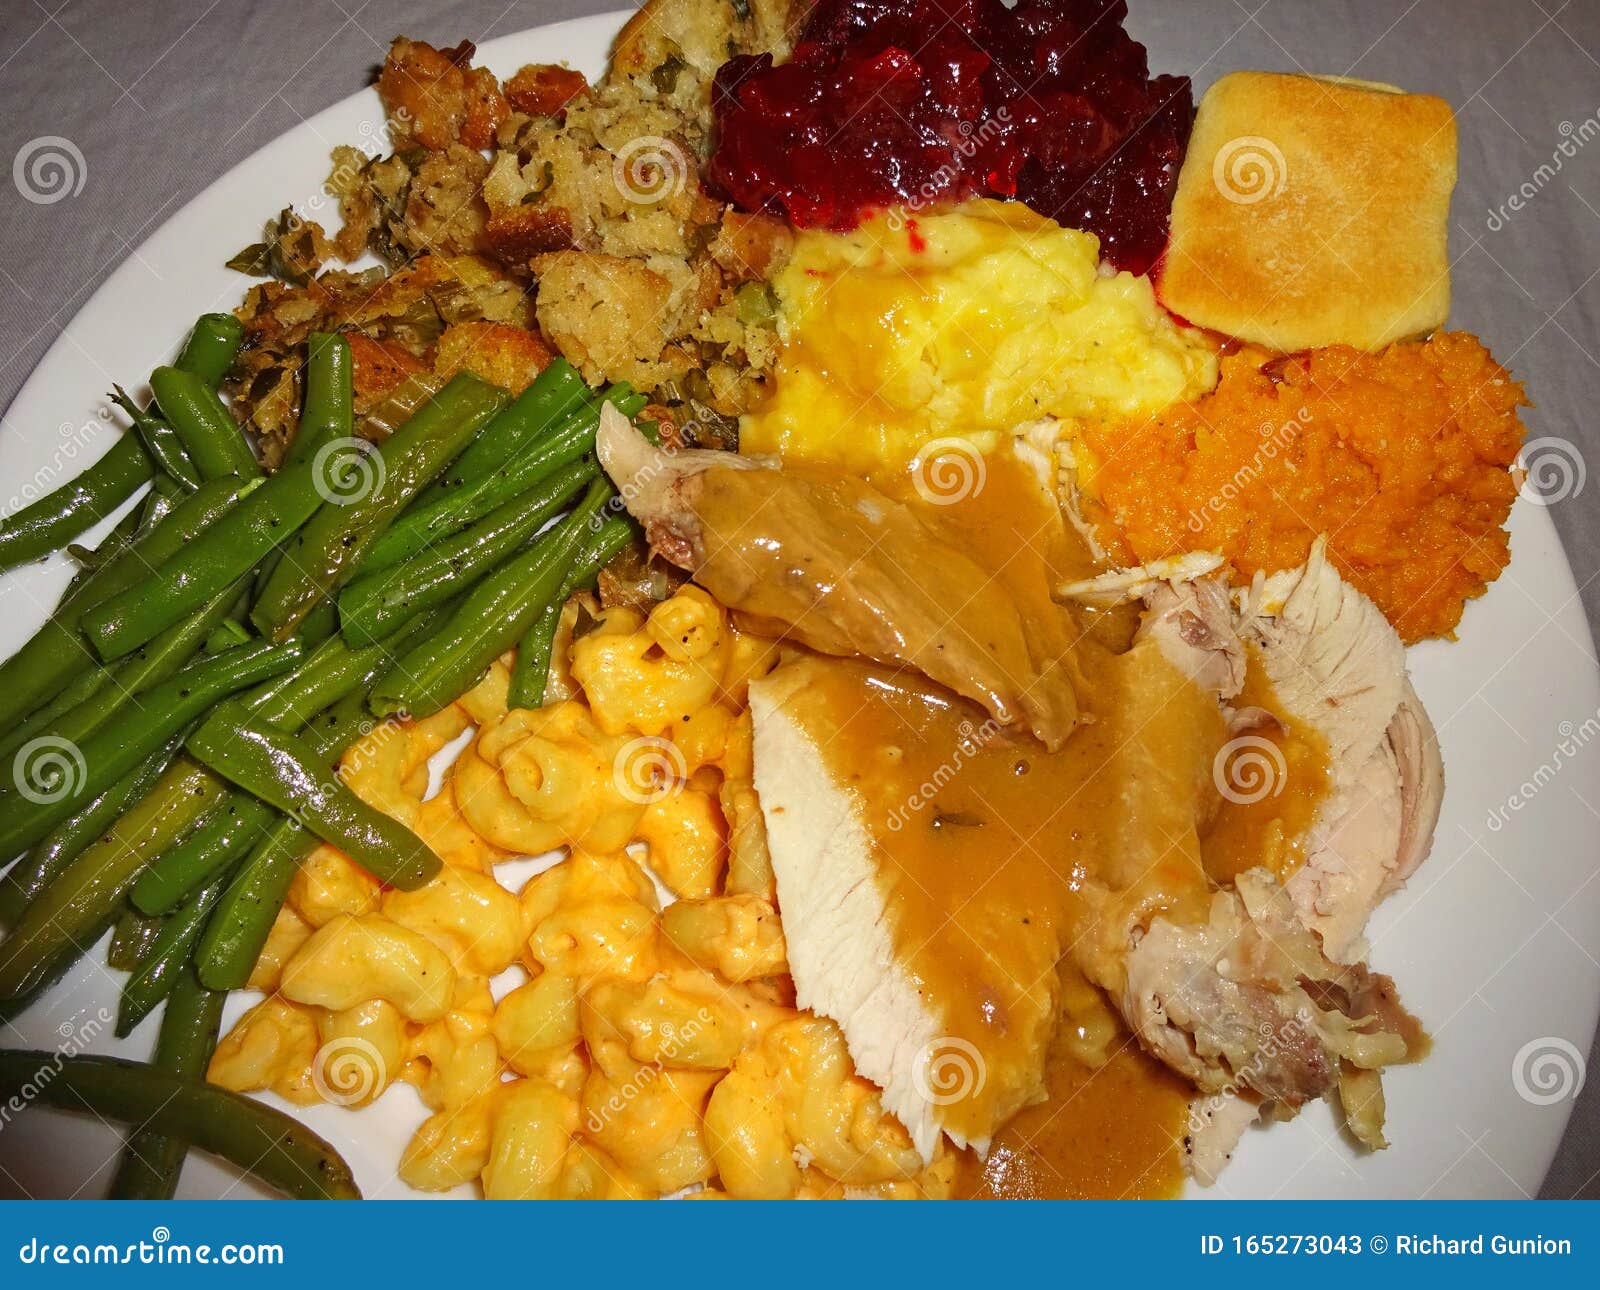 Full Plate Thanksgiving Turkey Dinner Stock Image - Image of dinner ...